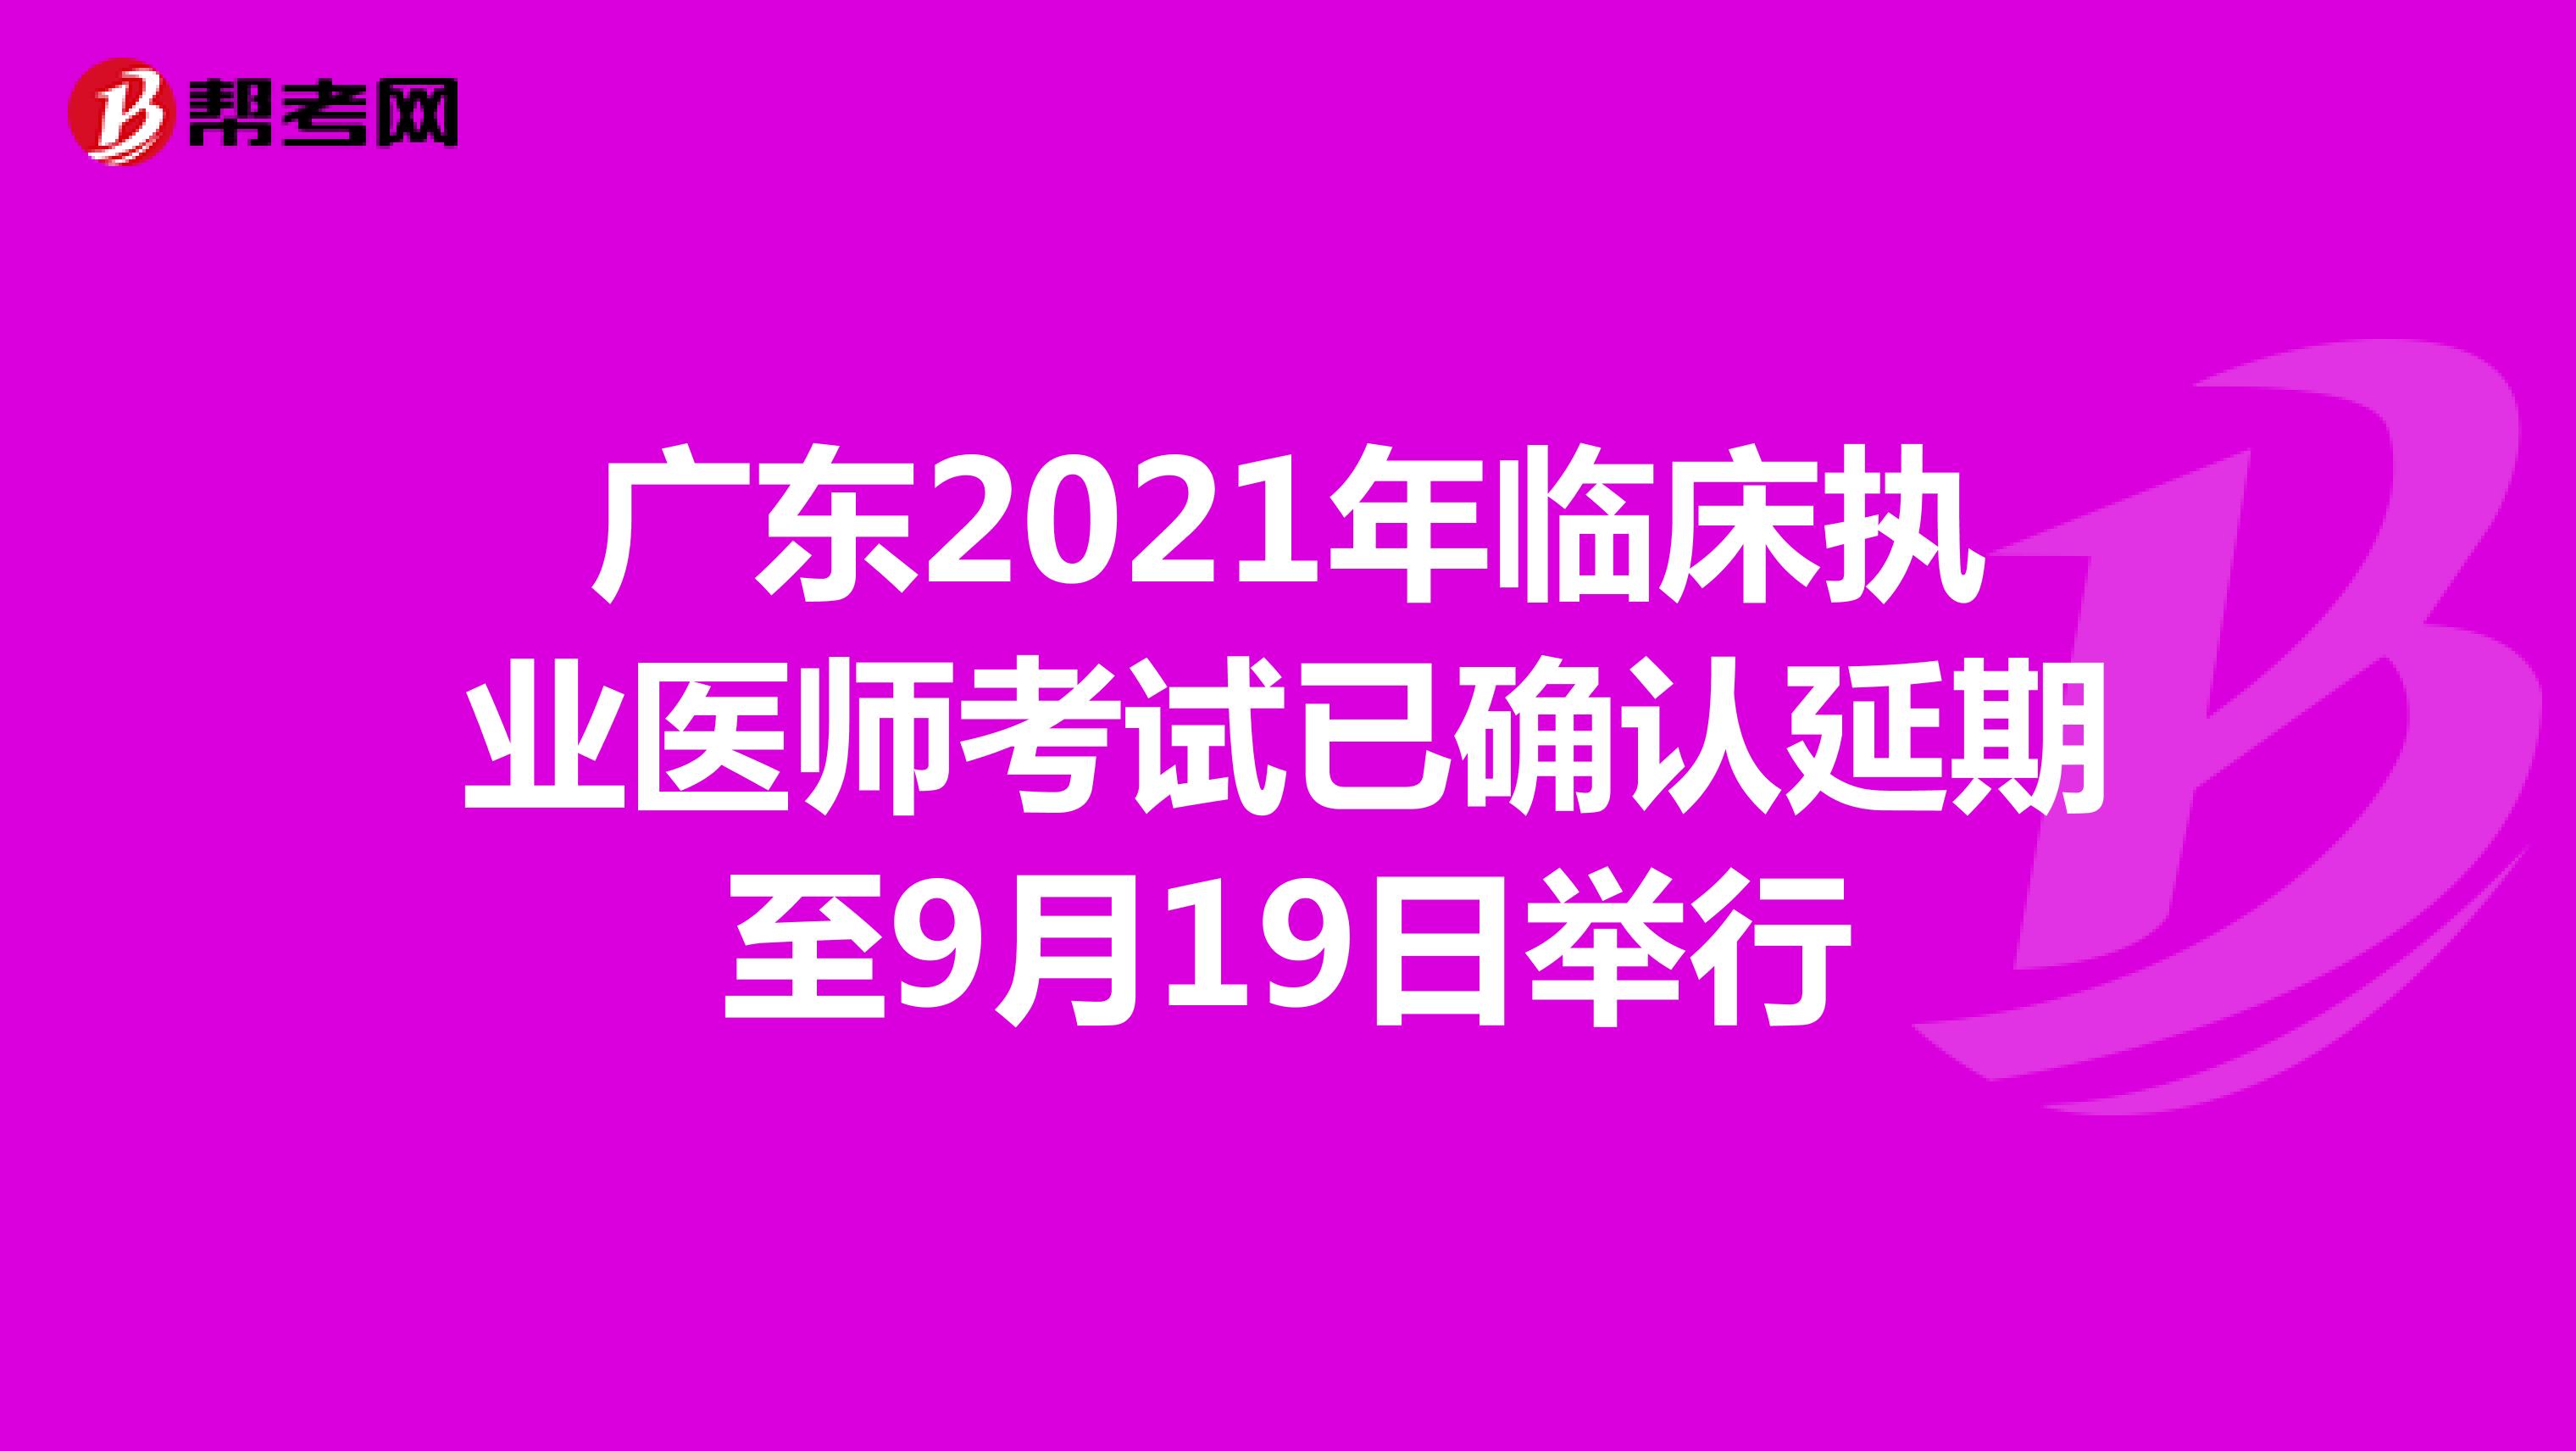 广东2021年临床执业医师考试已确认延期至9月19日举行